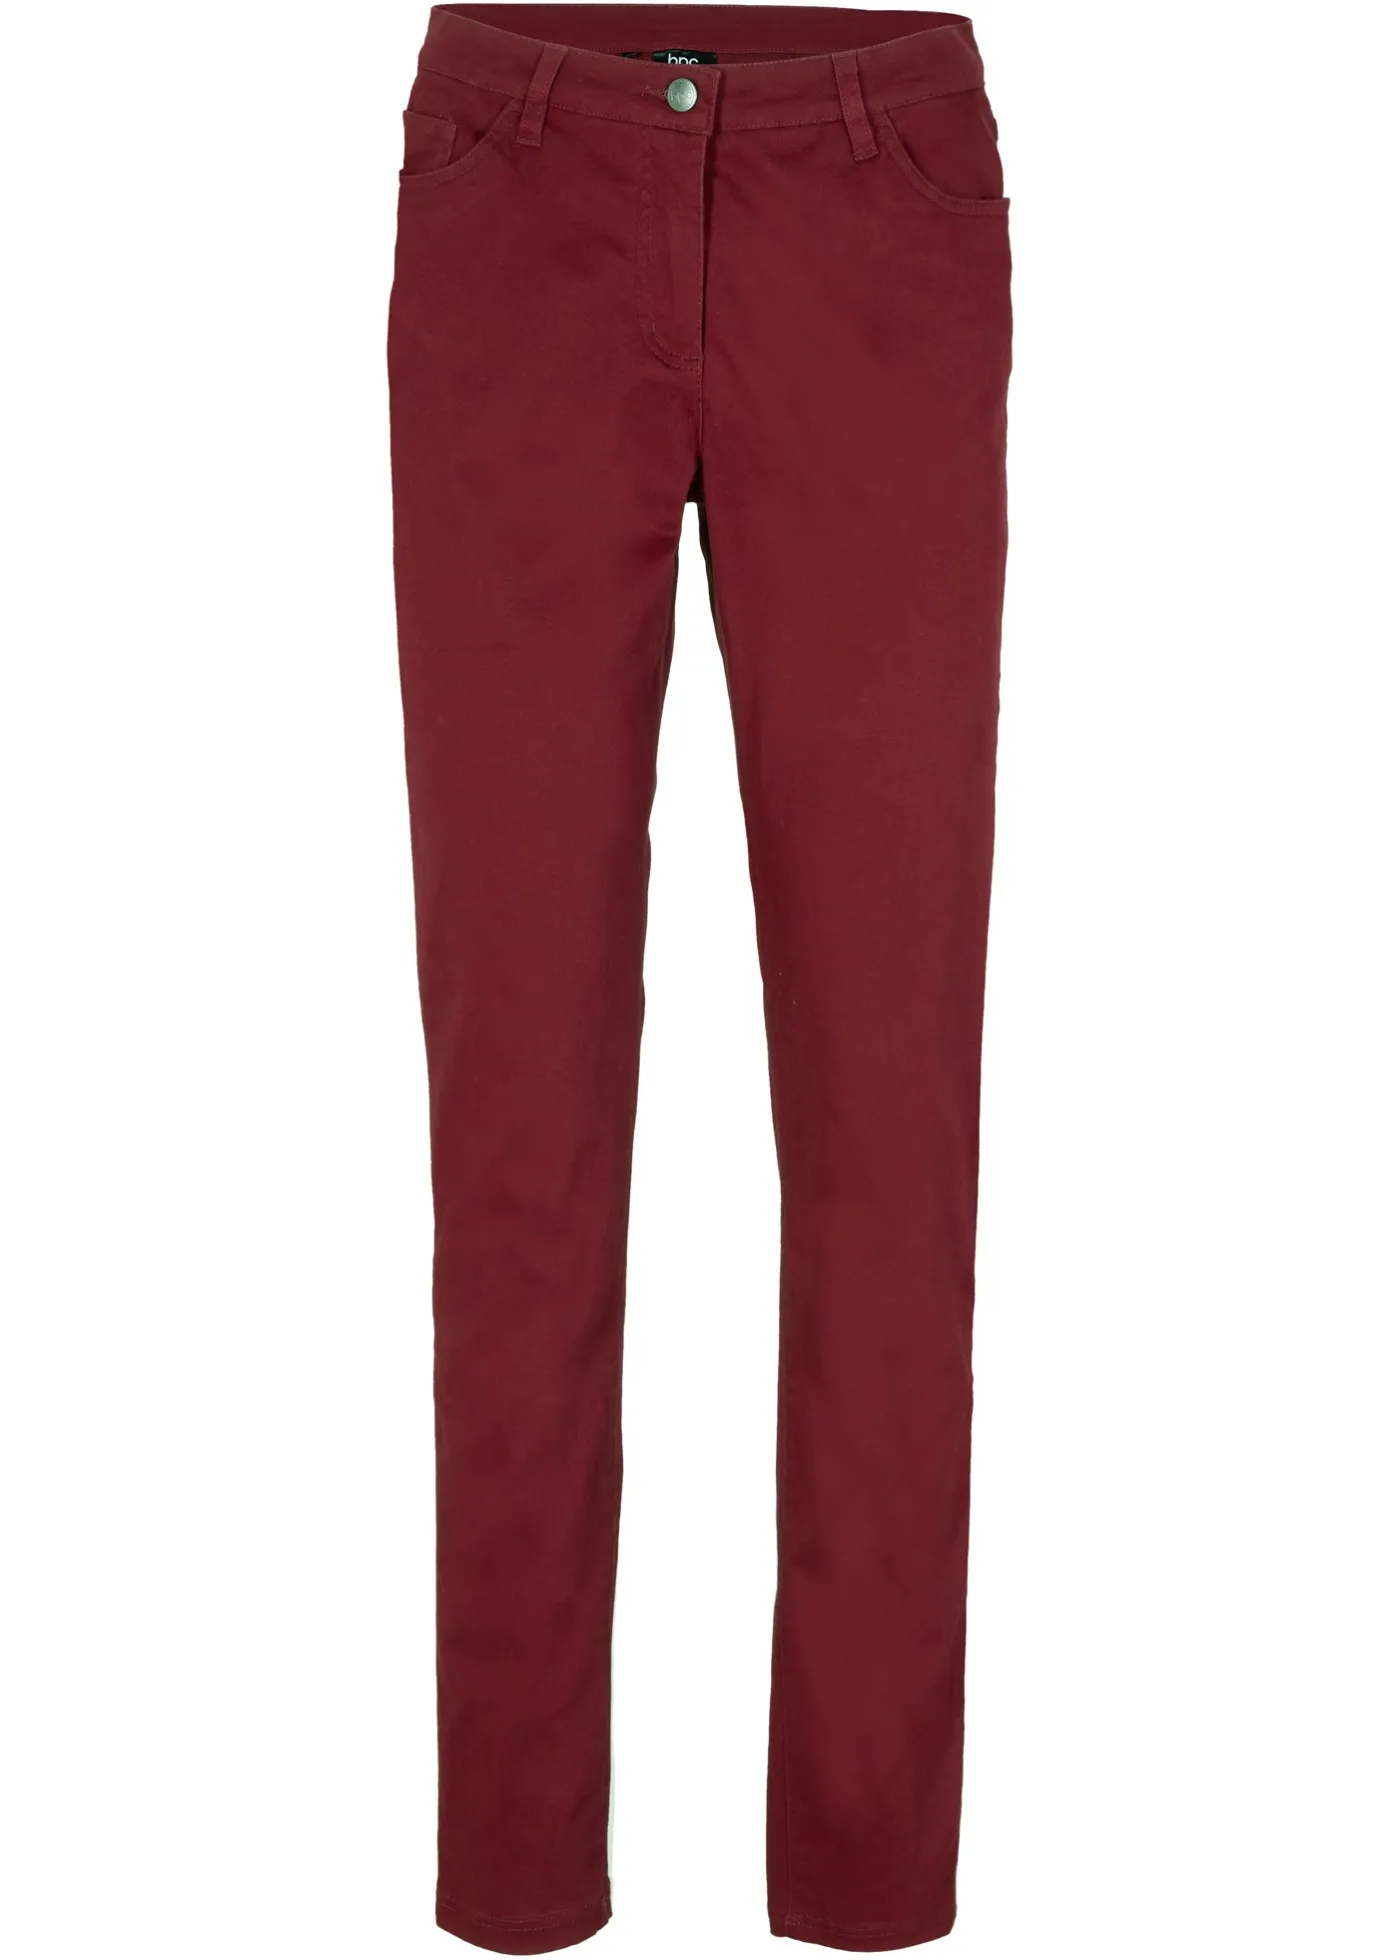 Pantaloni elasticizzati slim fit (Rosso) - bpc bonprix collection